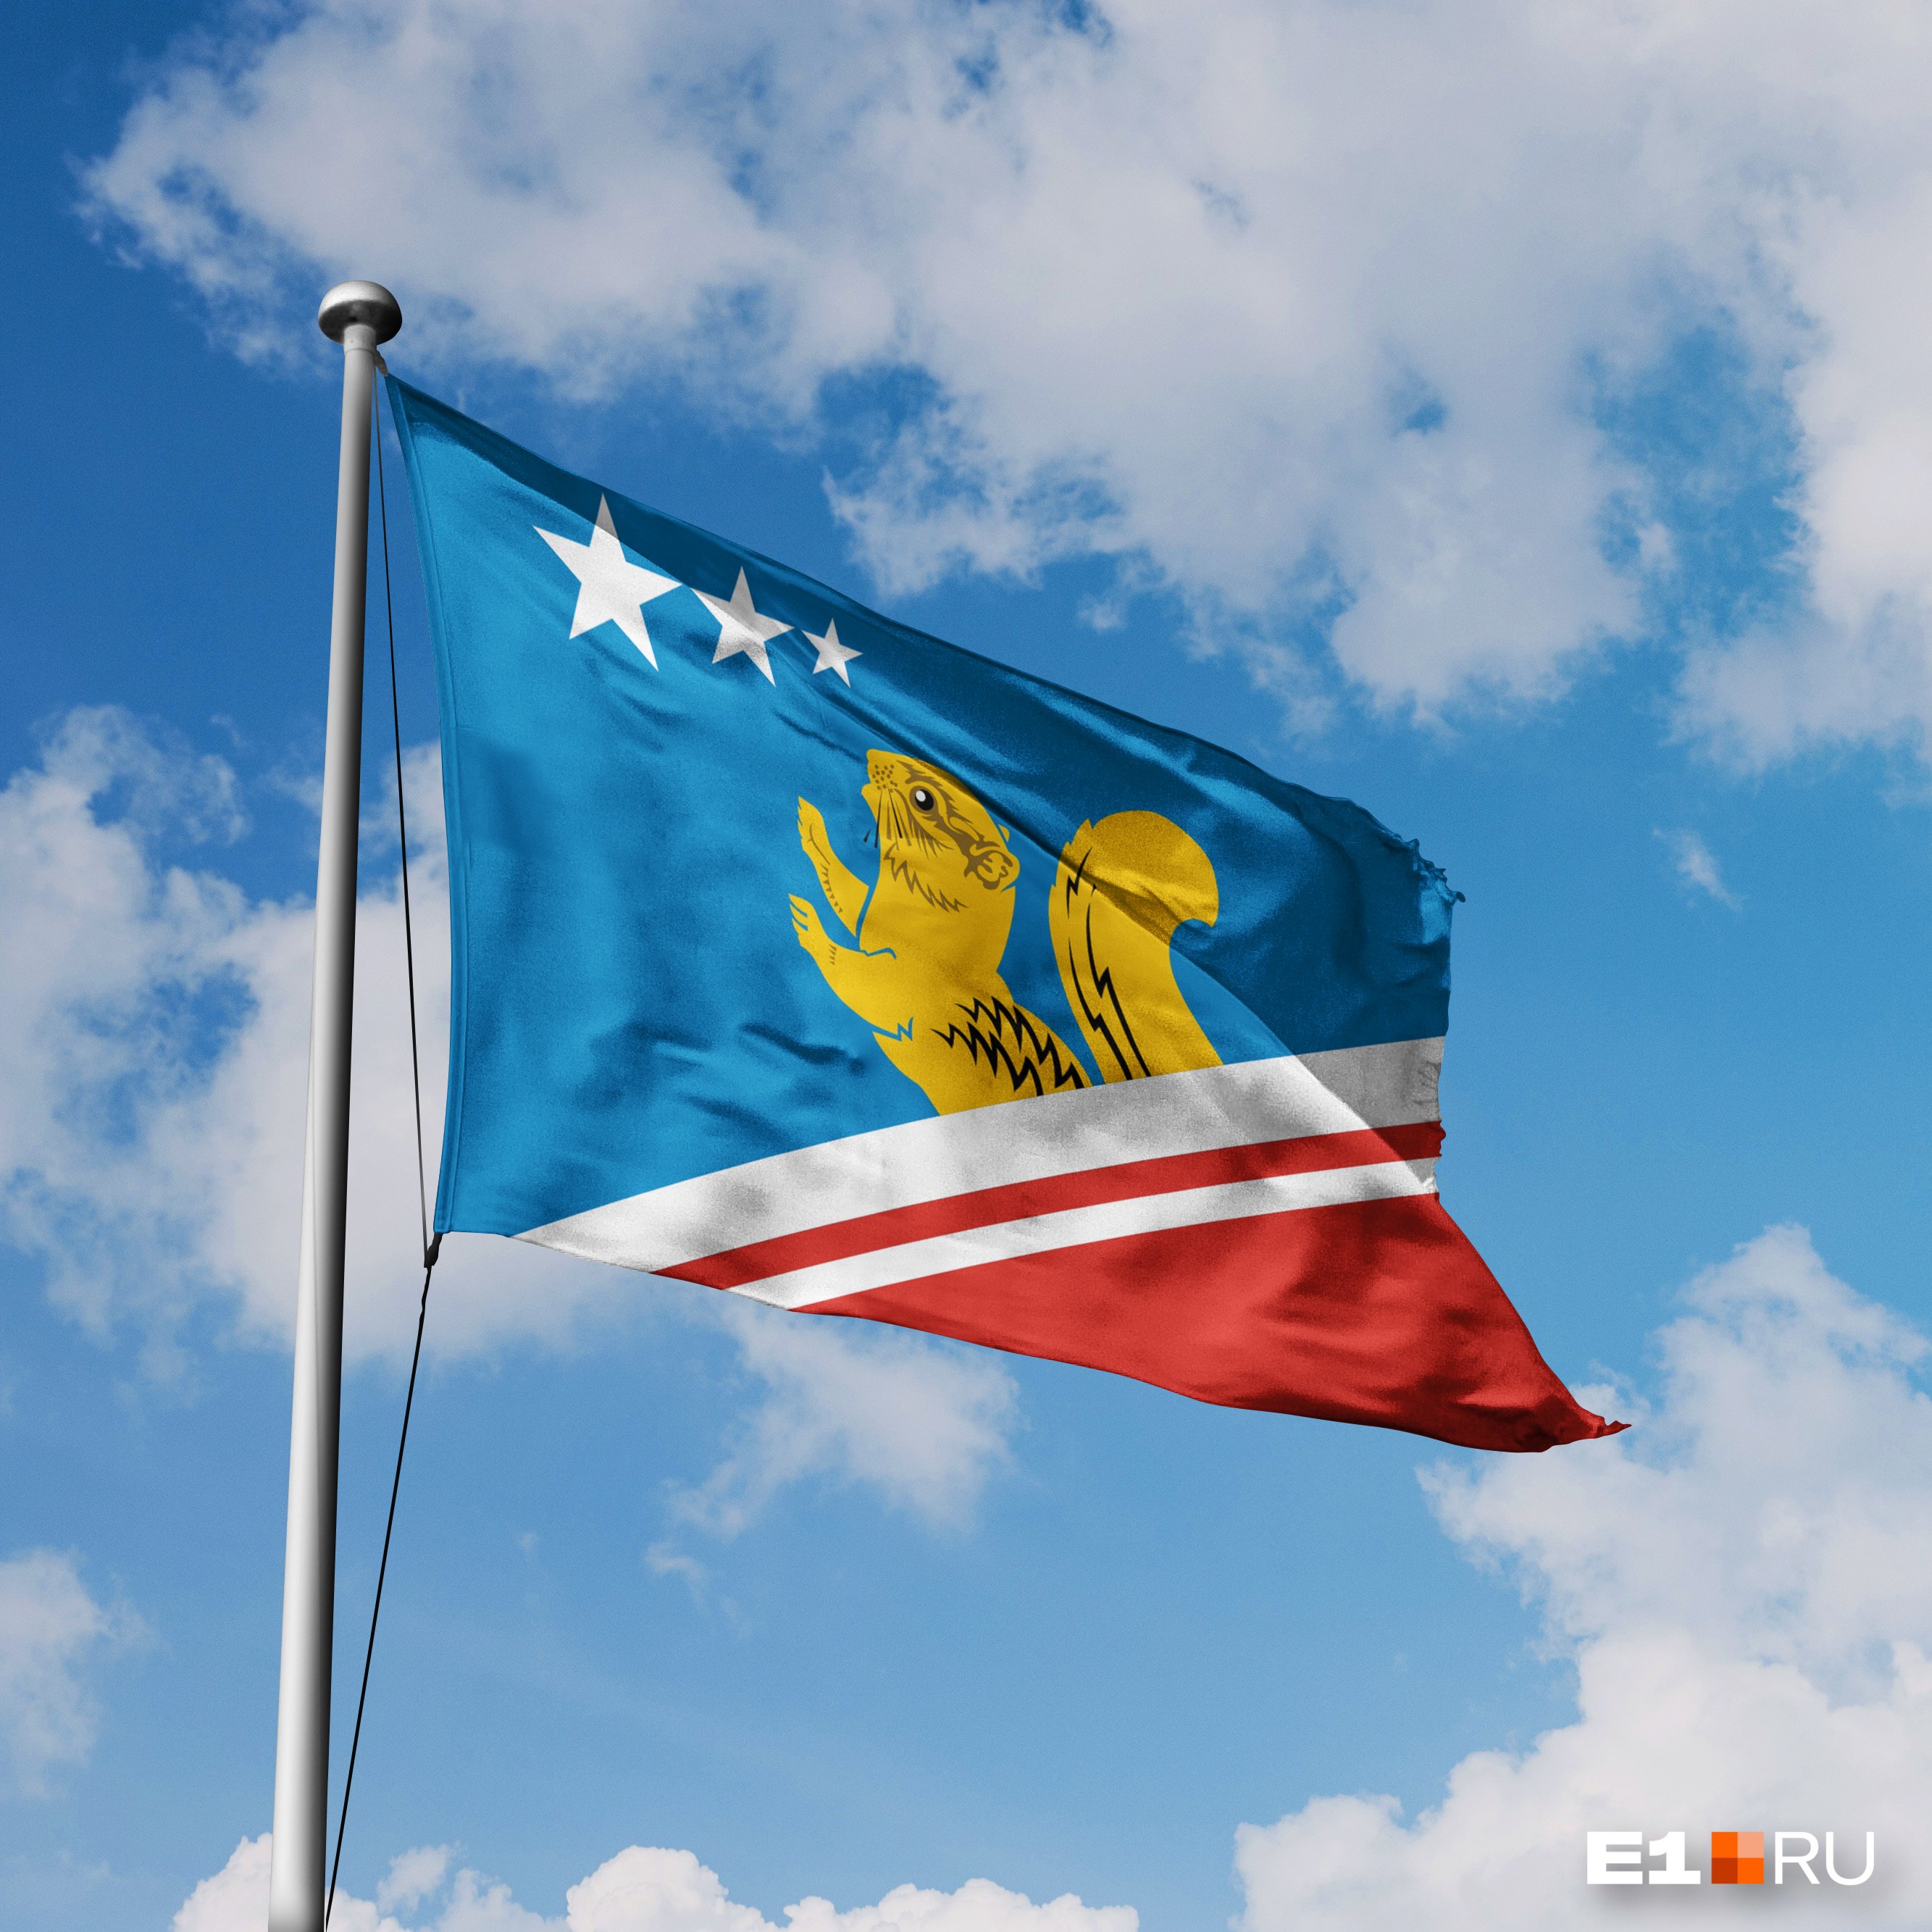 Волчанск — первый город, на флаге которого изображен бурундук 